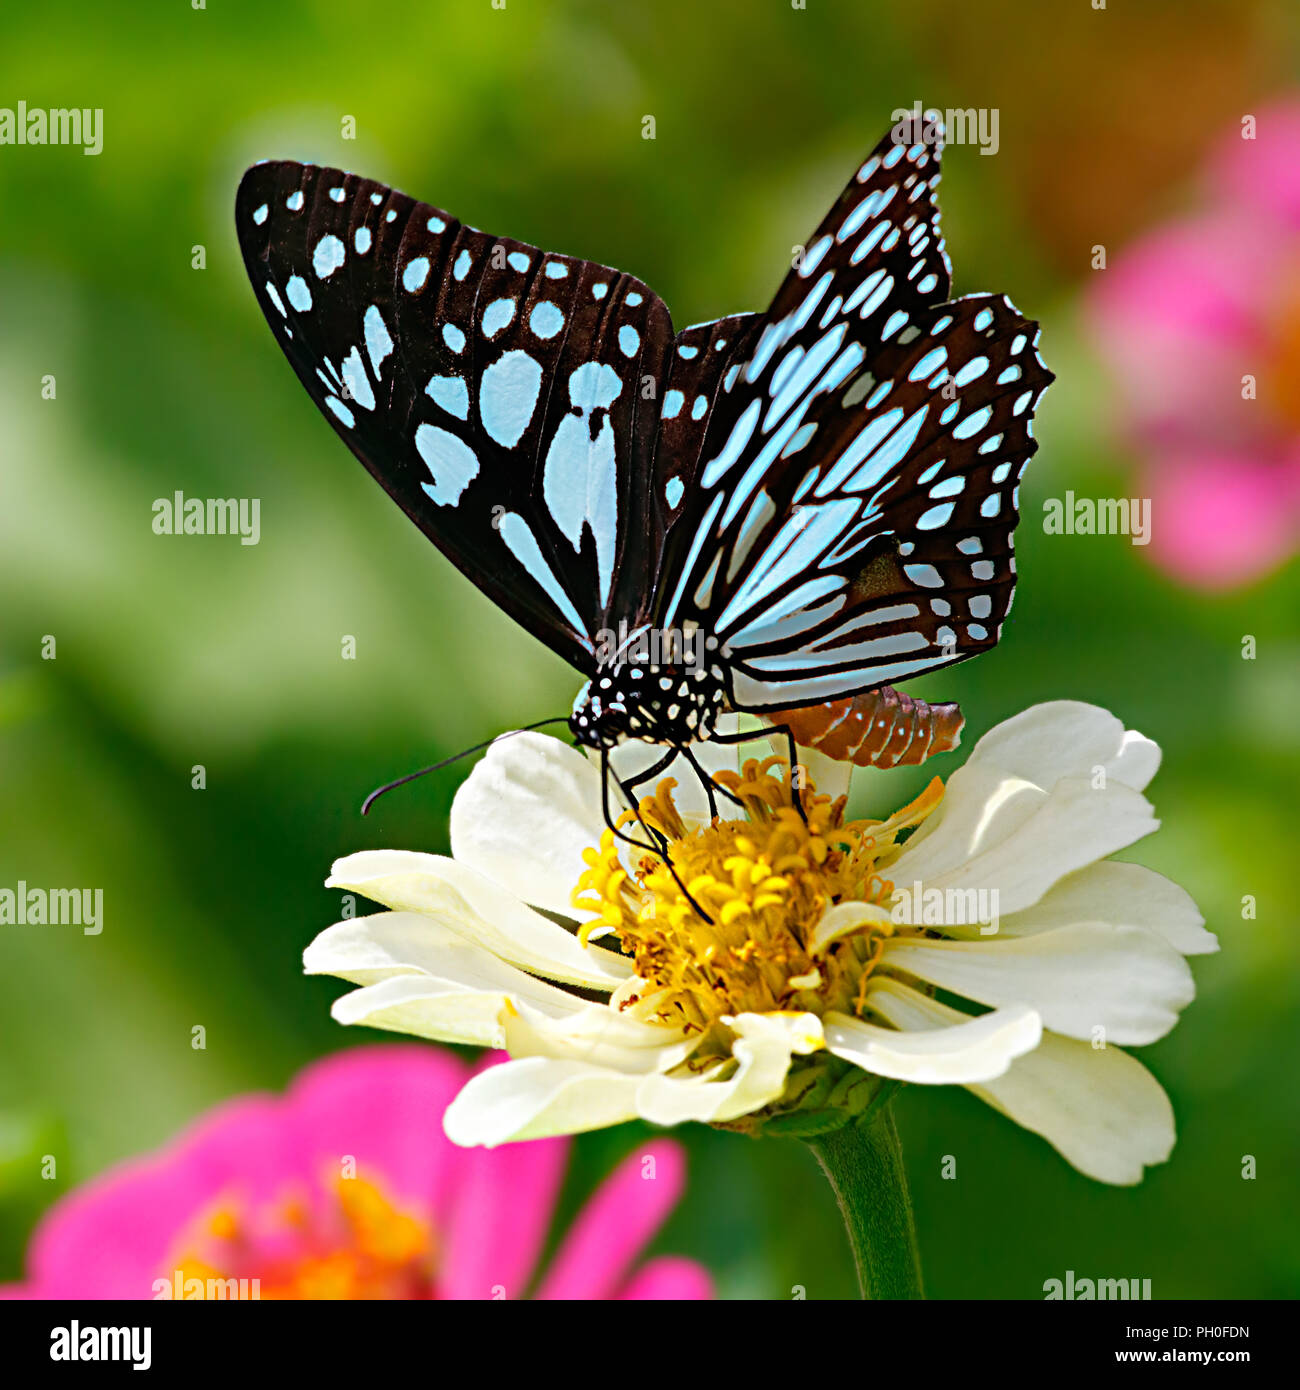 Tigre azul o mariposas Danaid Tirumala limniace sobre un blanco zinnia flor con fondo verde y flores de color rosa en el fondo Foto de stock